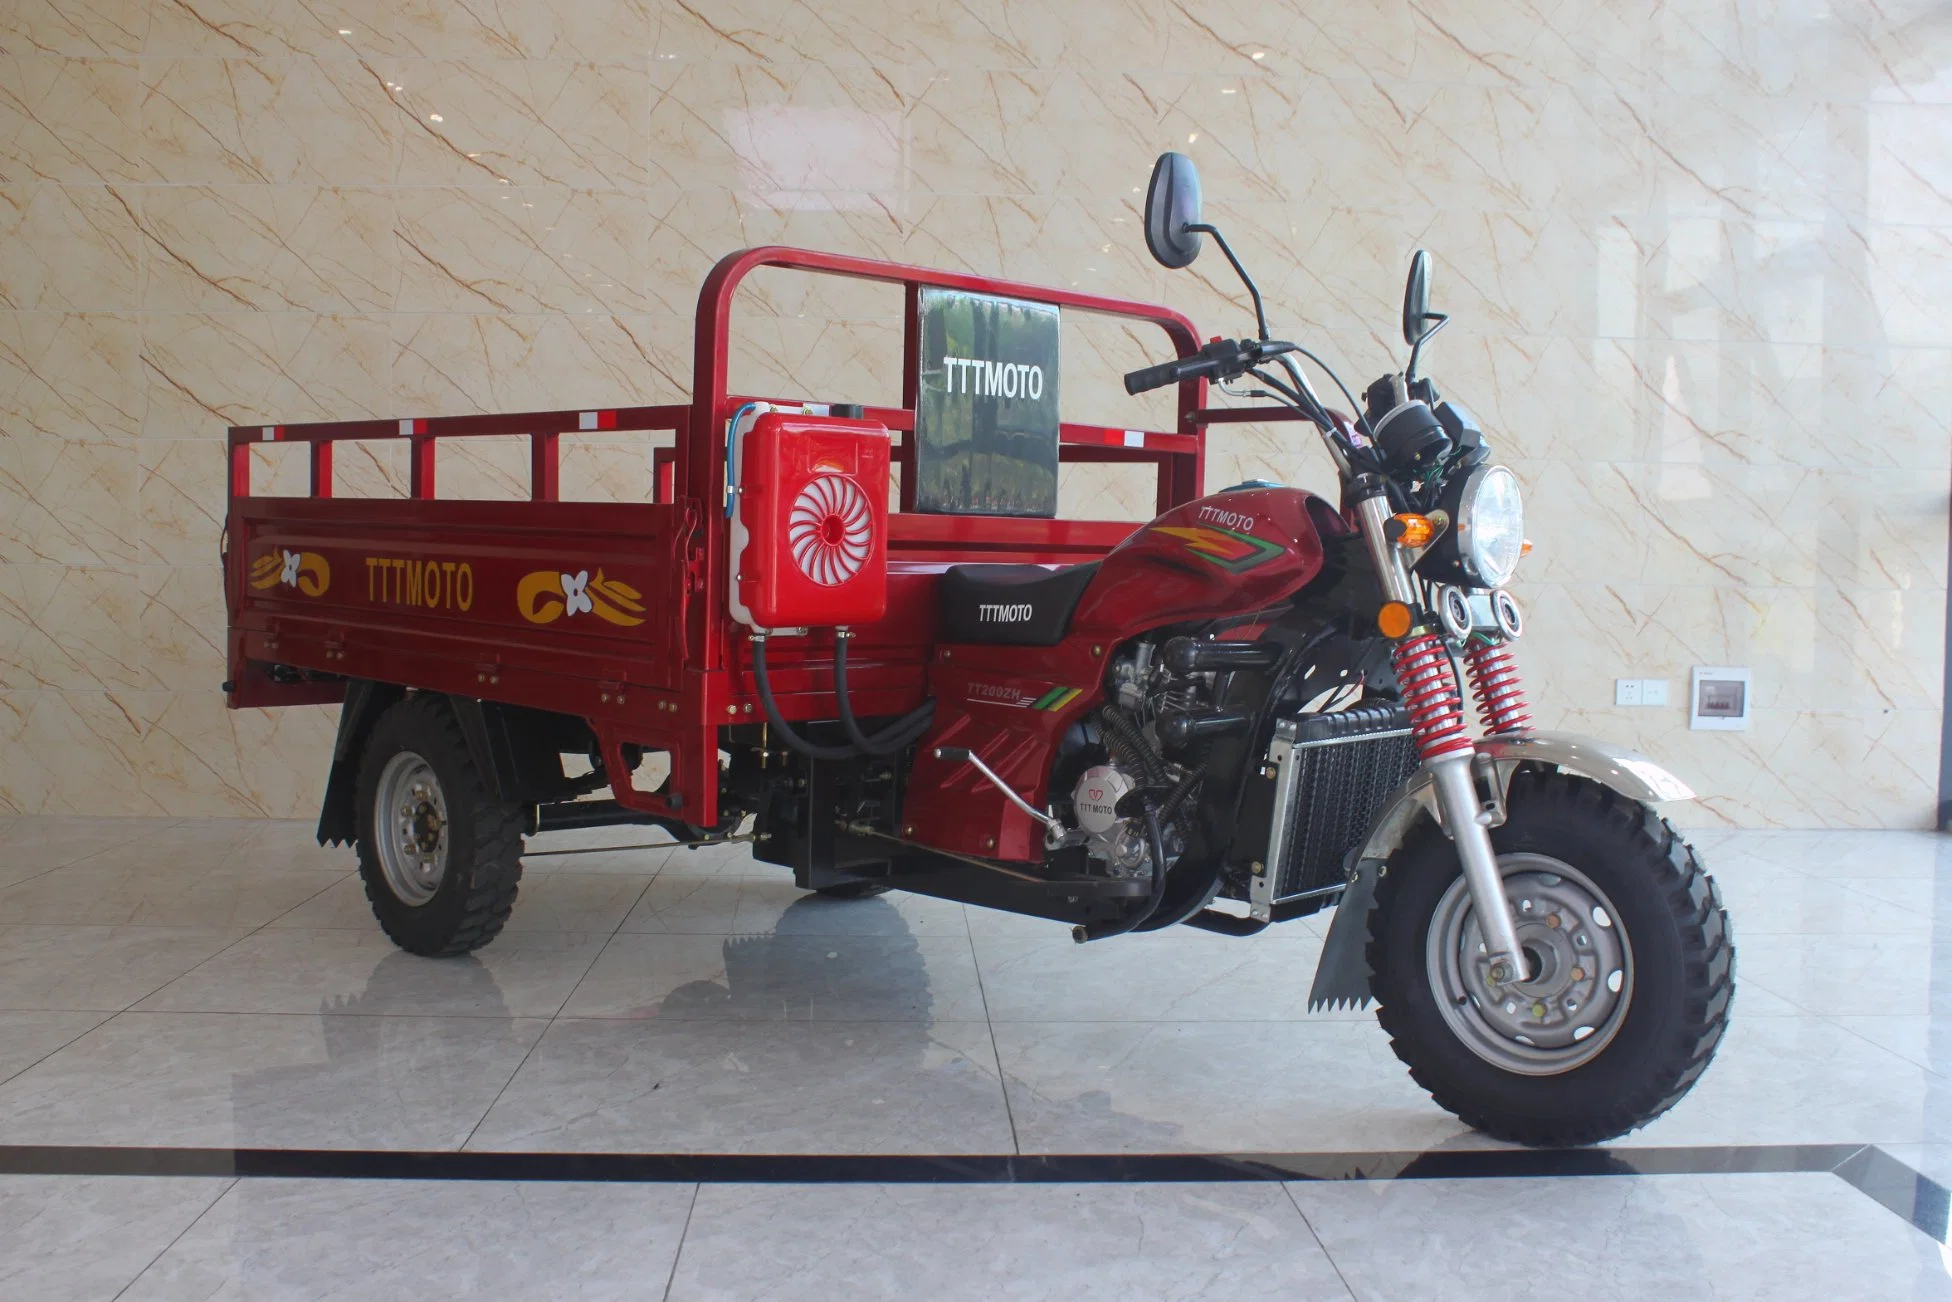 Мотоцикл с тремя колесами на Кинглион-стрит 150 куб. См.